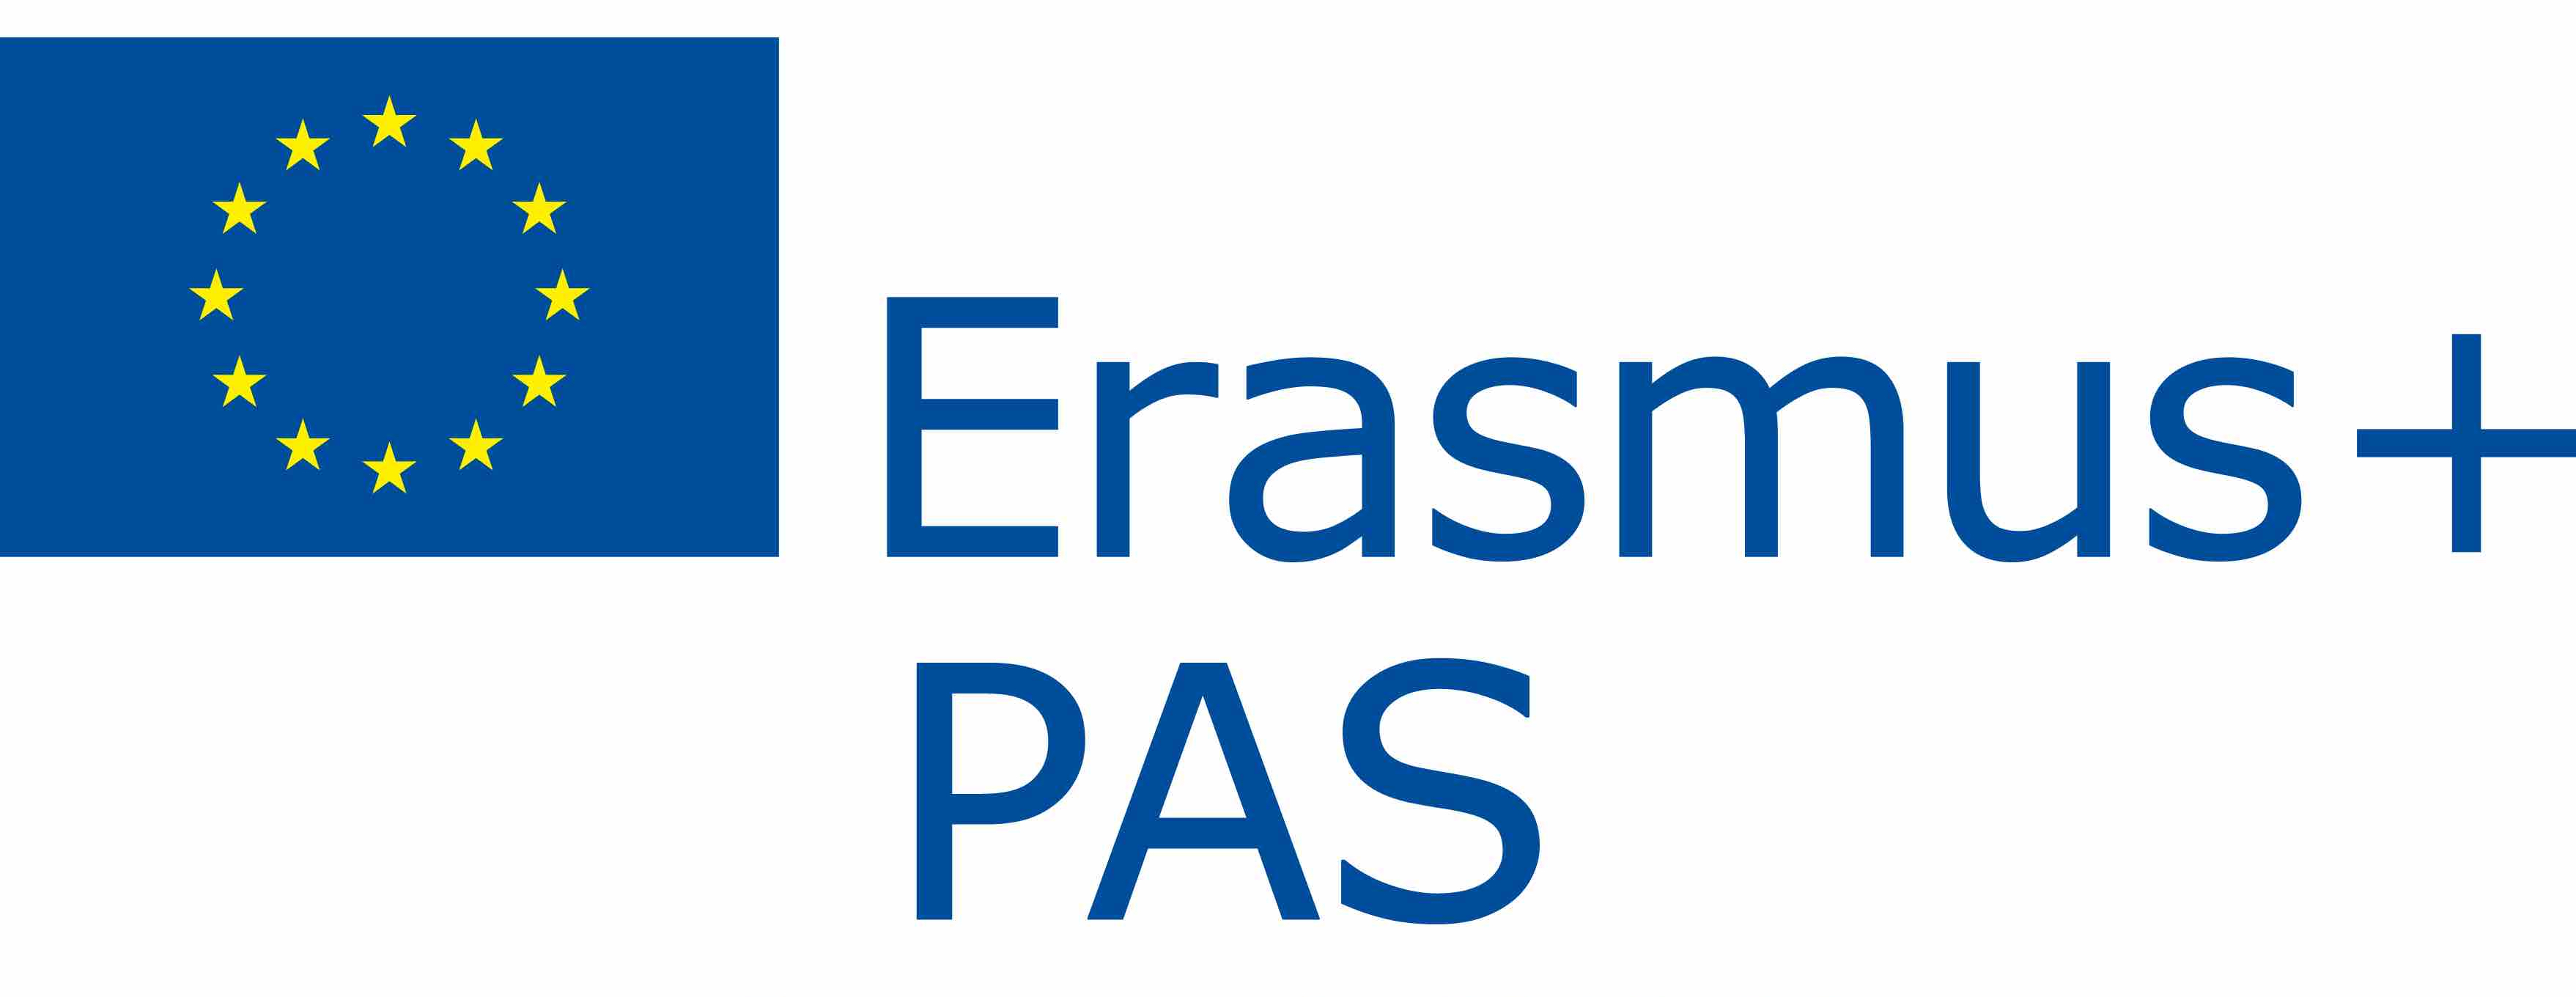 Convocatoria del programa Erasmus+ para el PAS de la UMU para realizar actividades de formación 2021/22 - segundo plazo de solicitud hasta el hasta el 1 de febrero de 2022